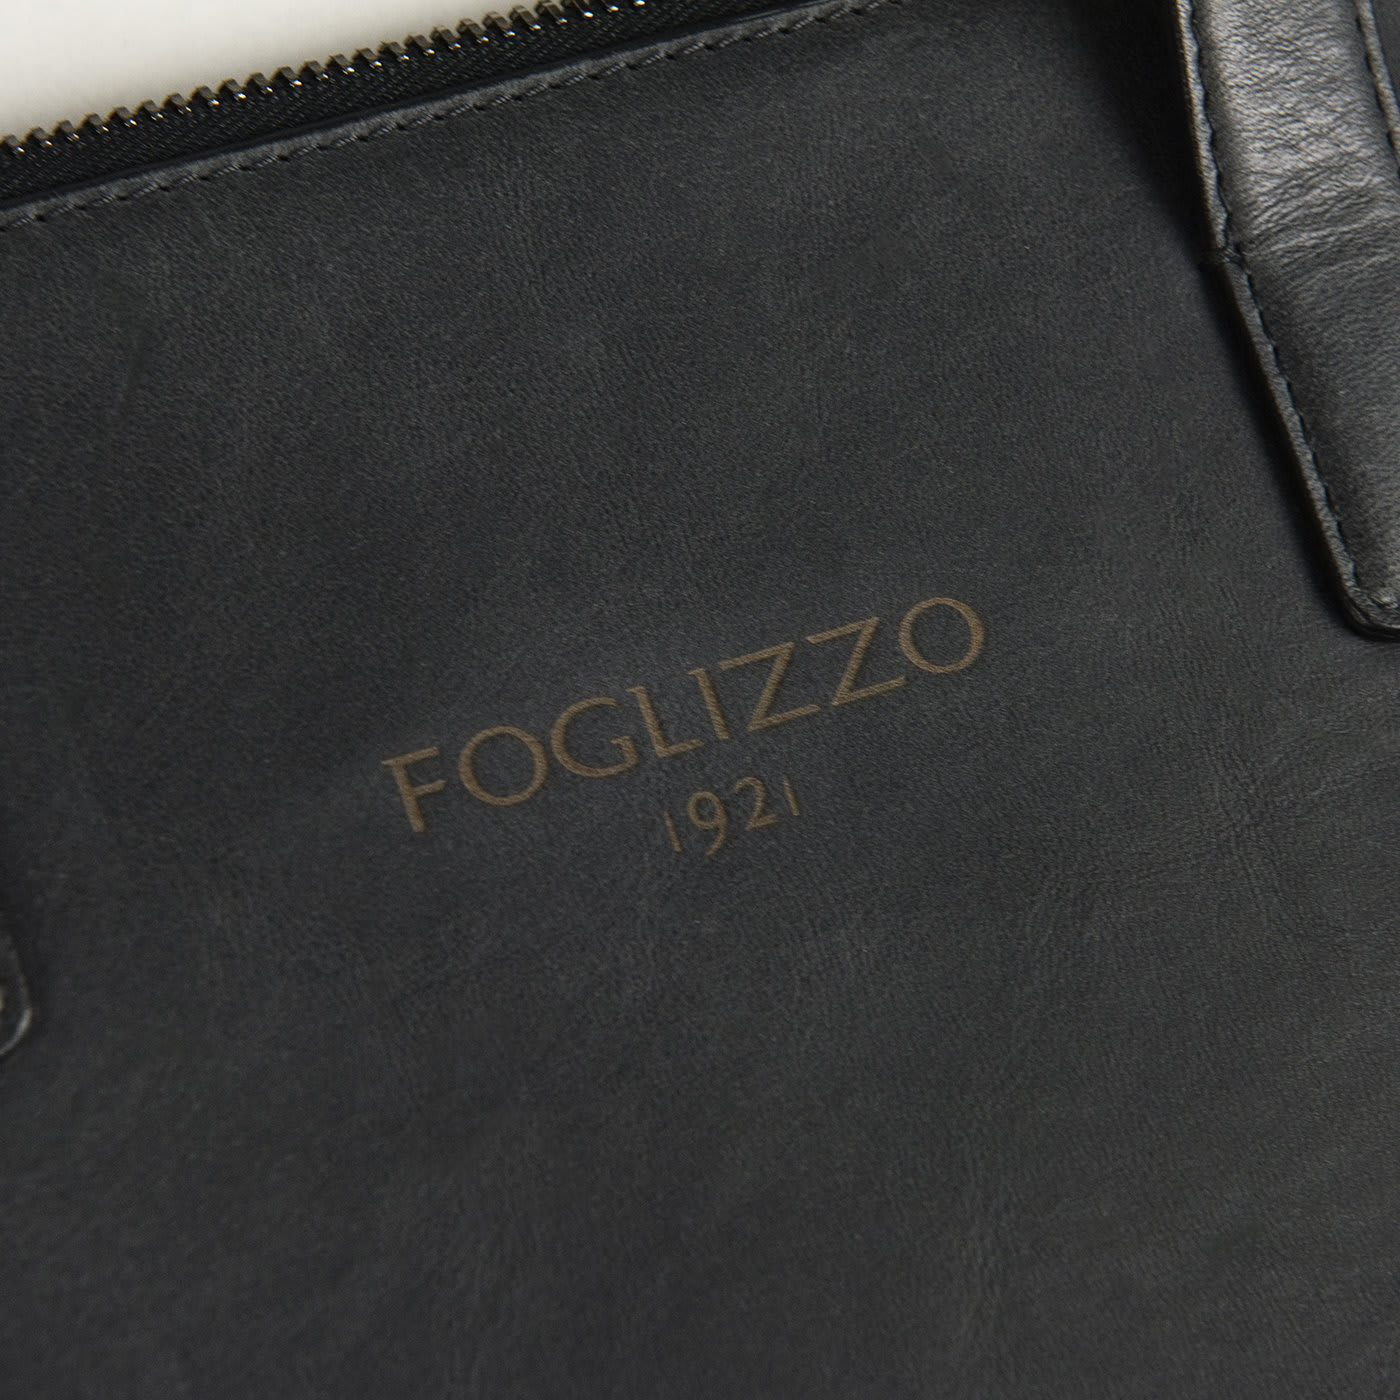 Galileo Black Slim Briefcase - Foglizzo 1921